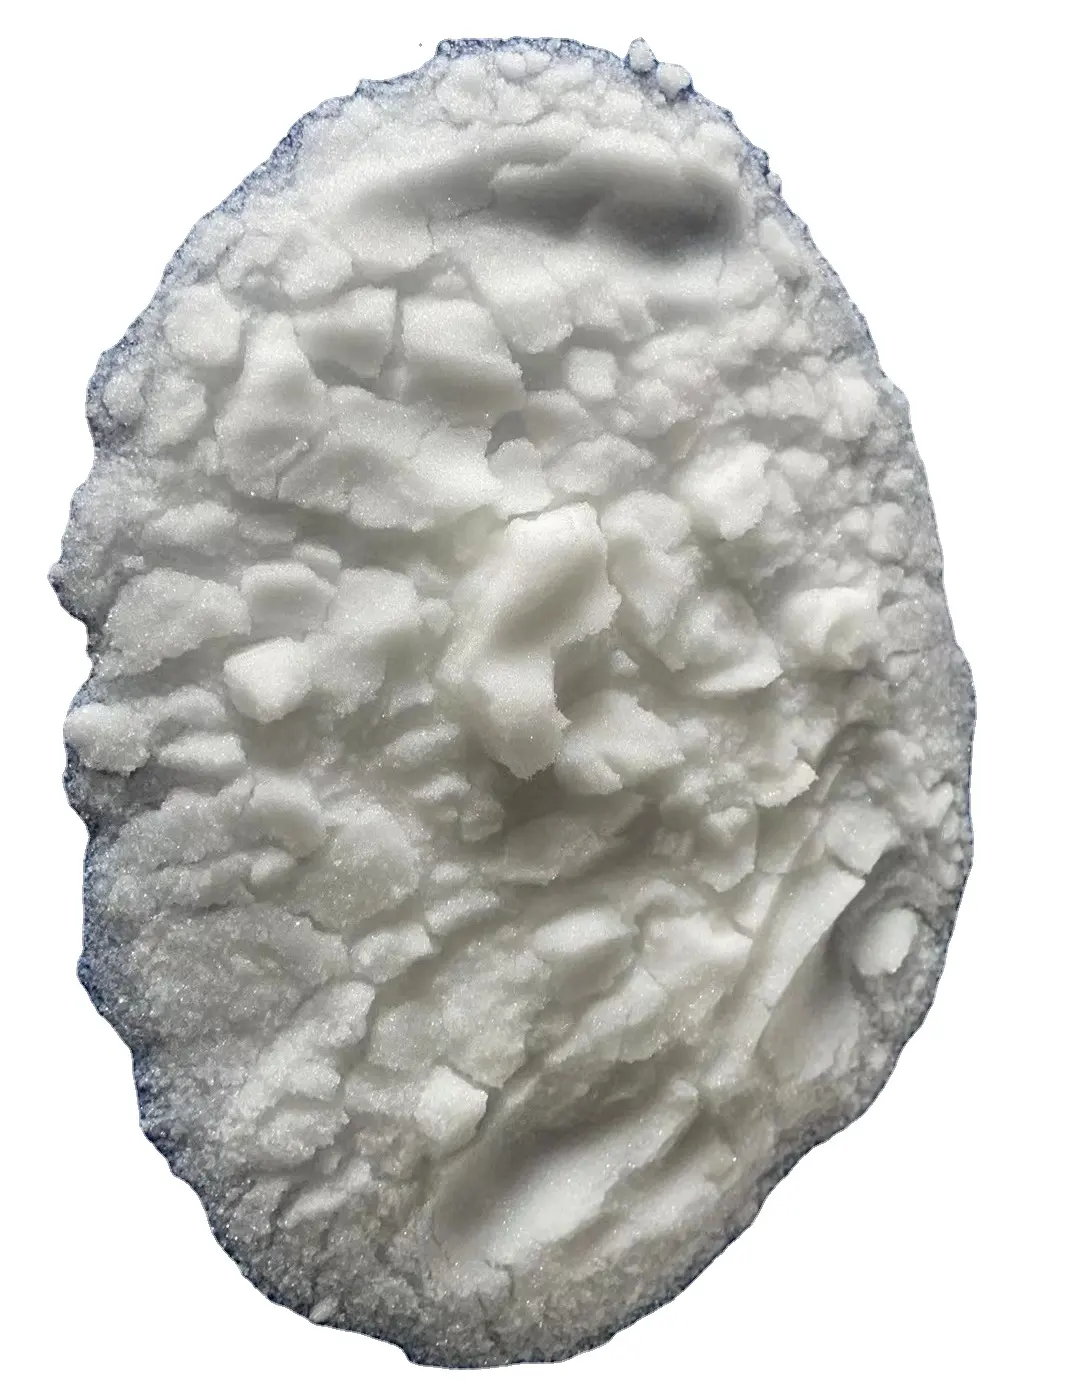 Résine de copolymère acrylique solide pour encres similaires aux B-725 NeoCryl